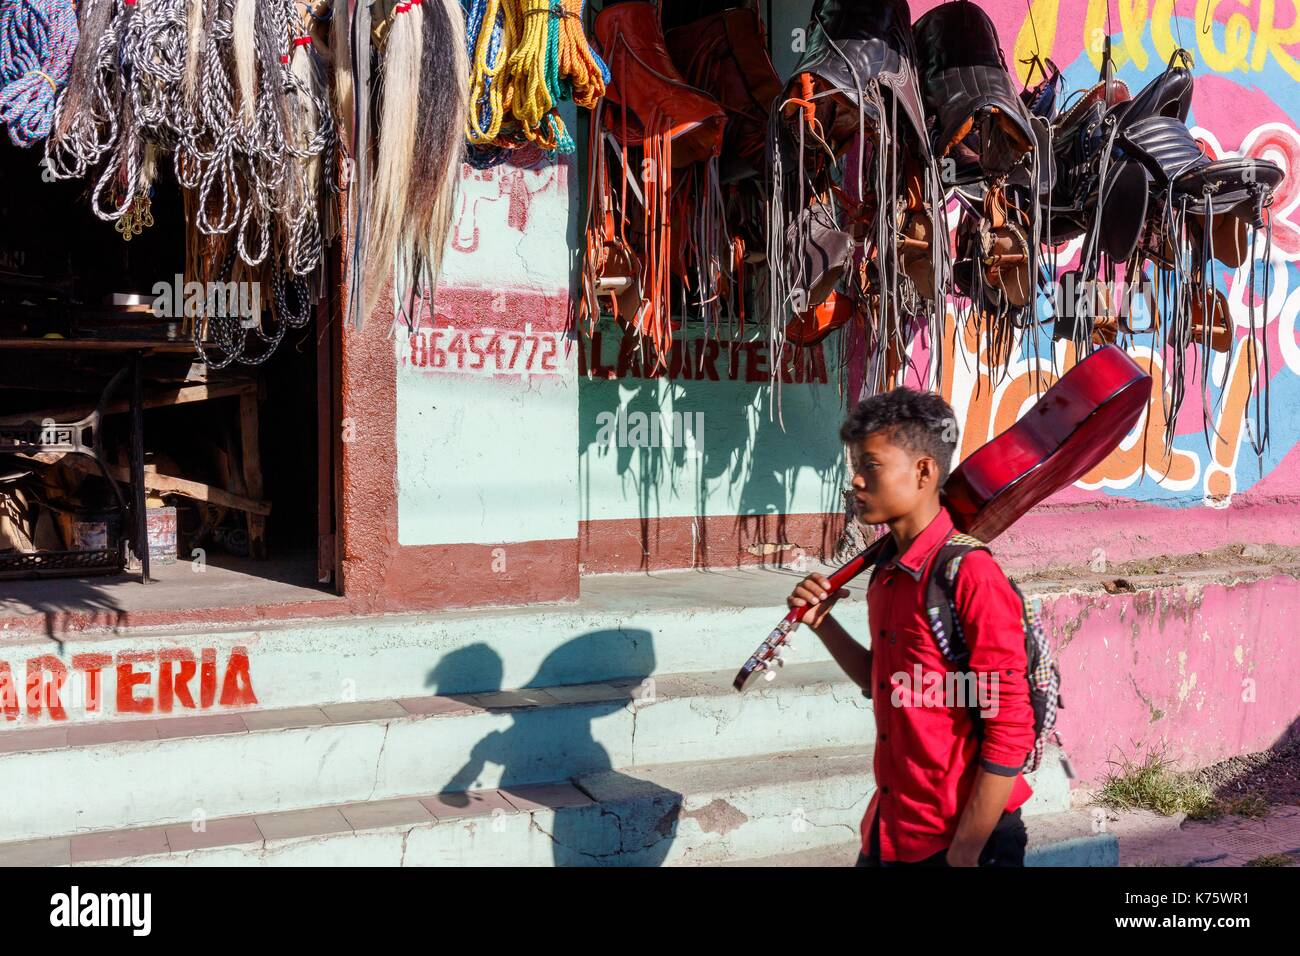 Nicaragua, Esteli provincia, Esteli, uomo con una chitarra prima di un negozio di vendita di funi e selle di cavallo Foto Stock